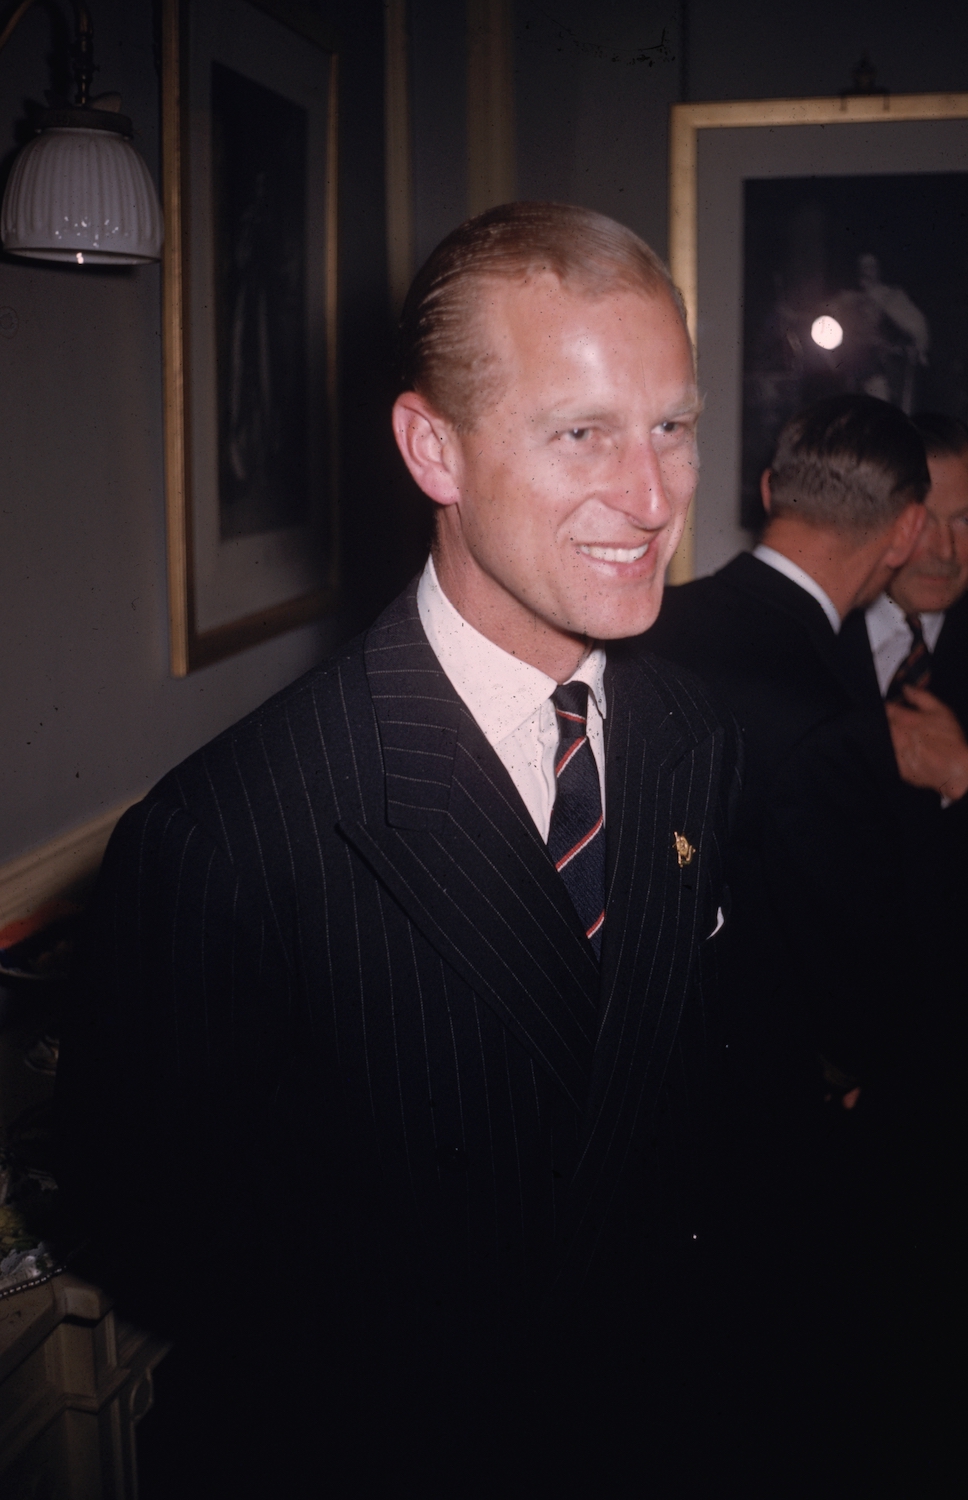 1955, принц Філіп, герцог Единбурзький, в Королівській сімейній кімнаті в Альберт-холі